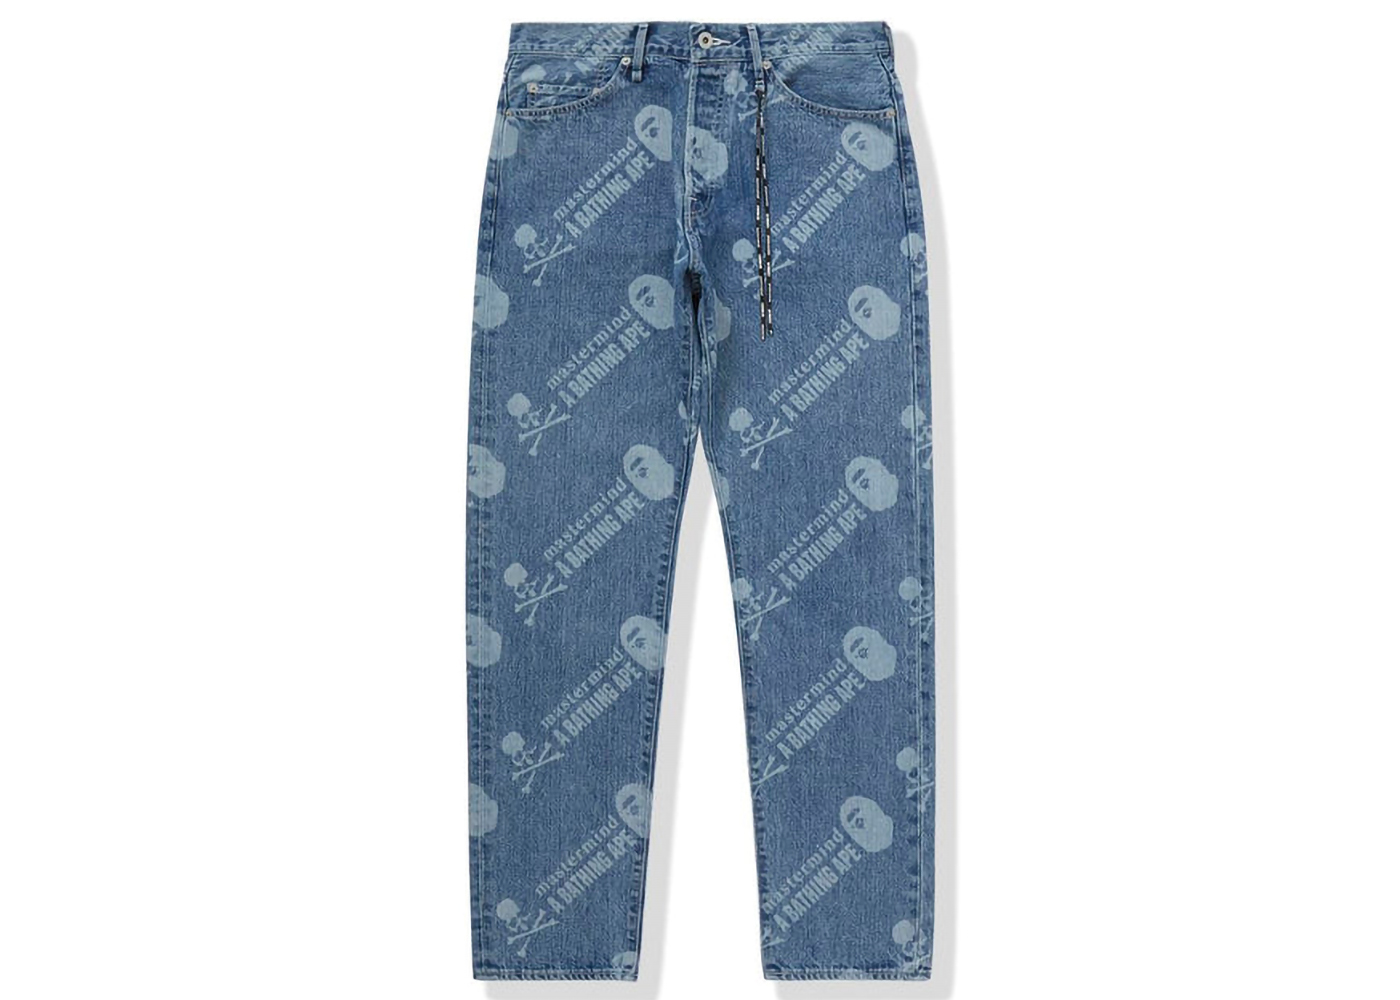 BAPE x Mastermind Washed Denim Pants Blue Indigo Men's - FW22 - US